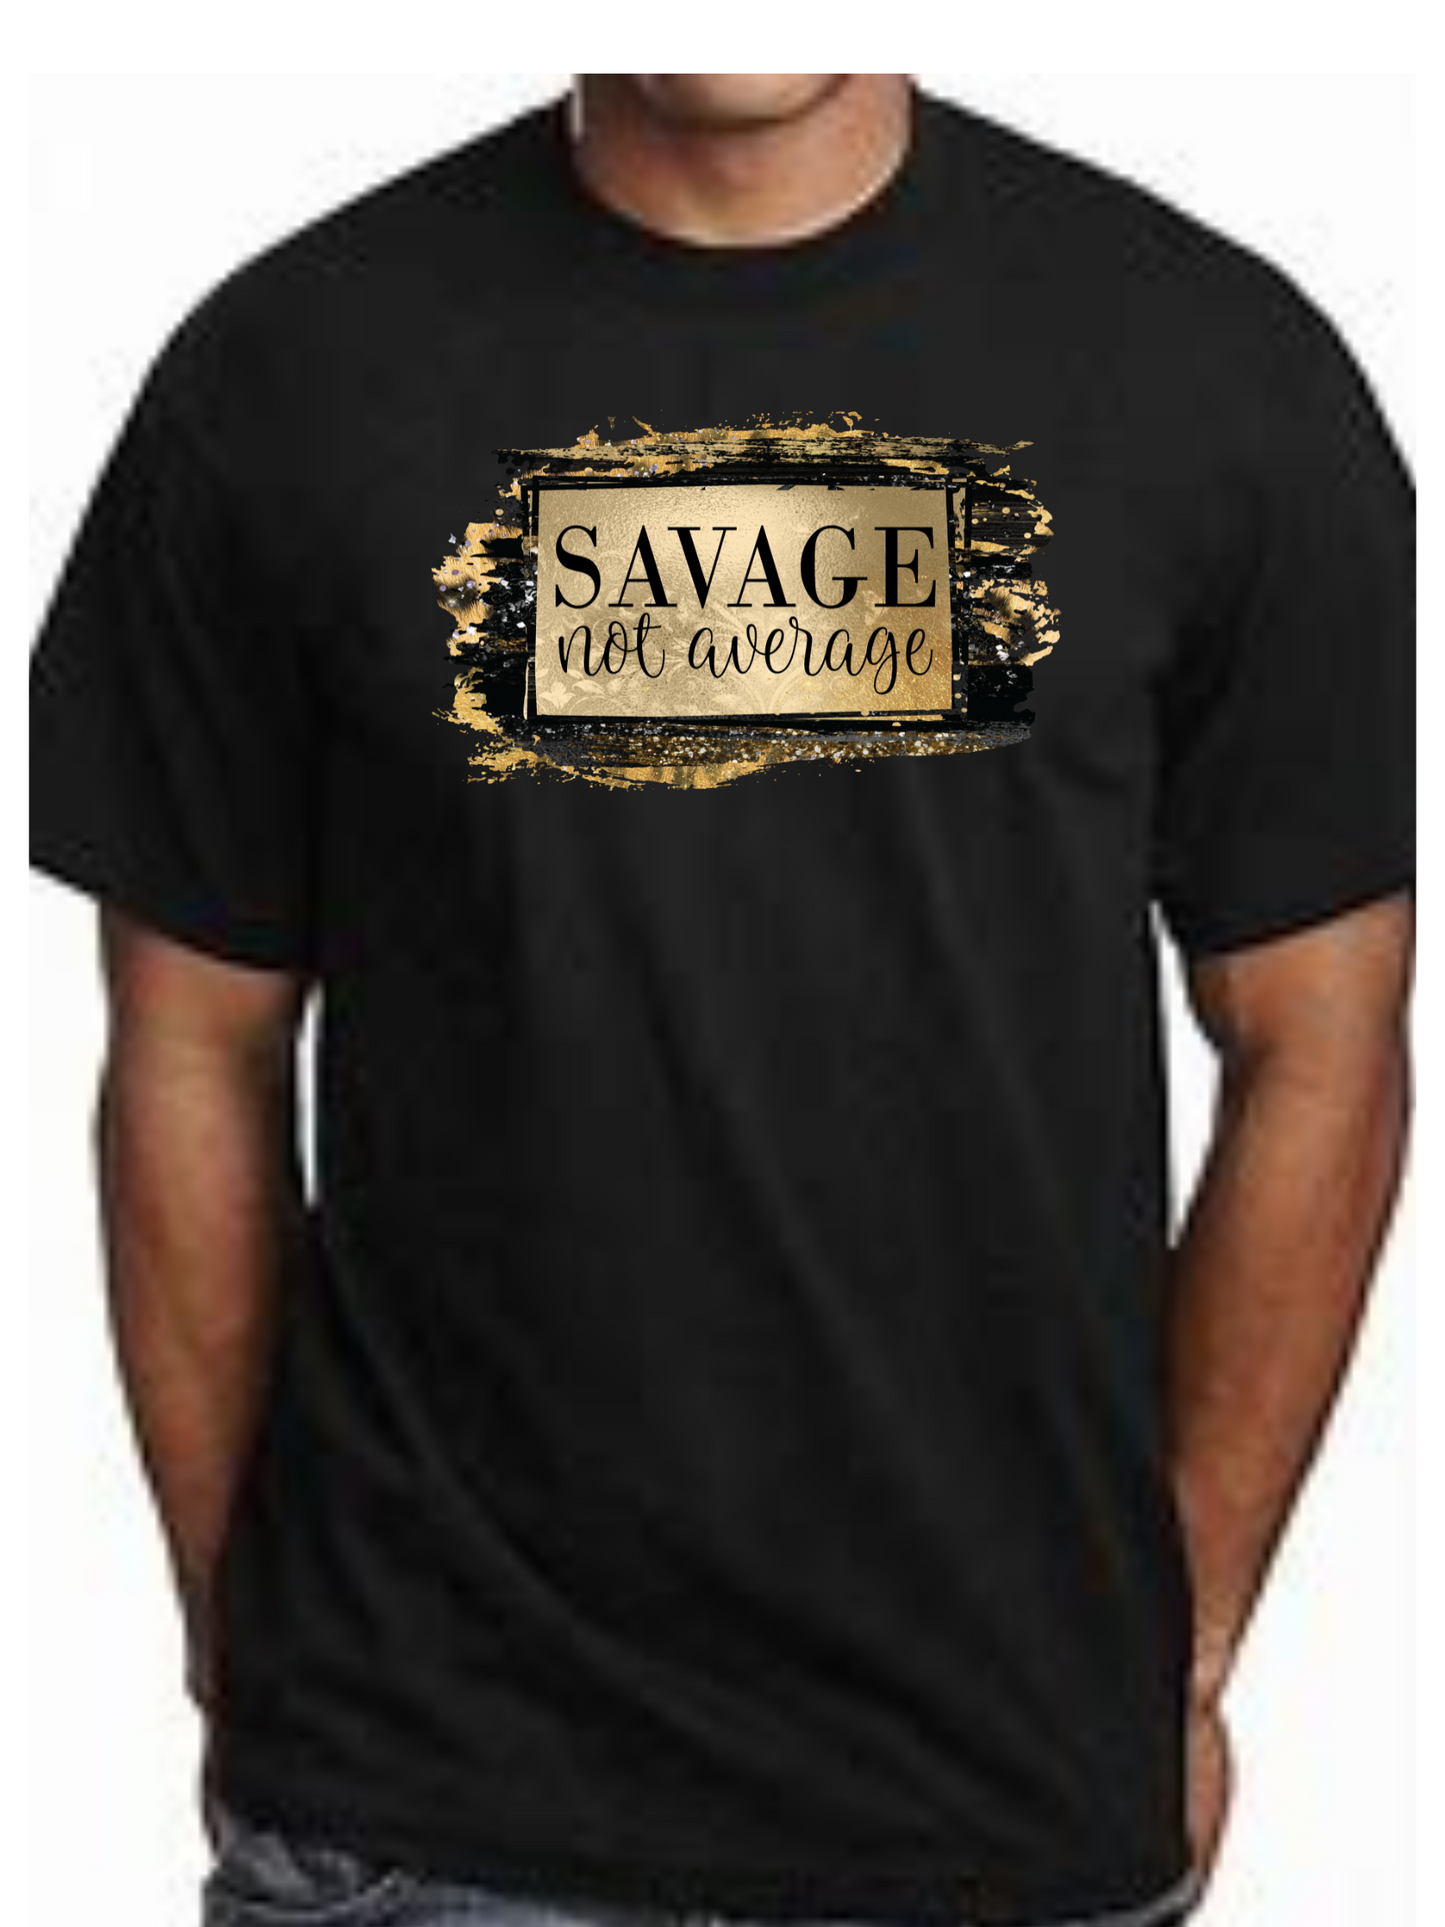 UNISEX "Savage Not Average" Short Sleeve T-Shirt